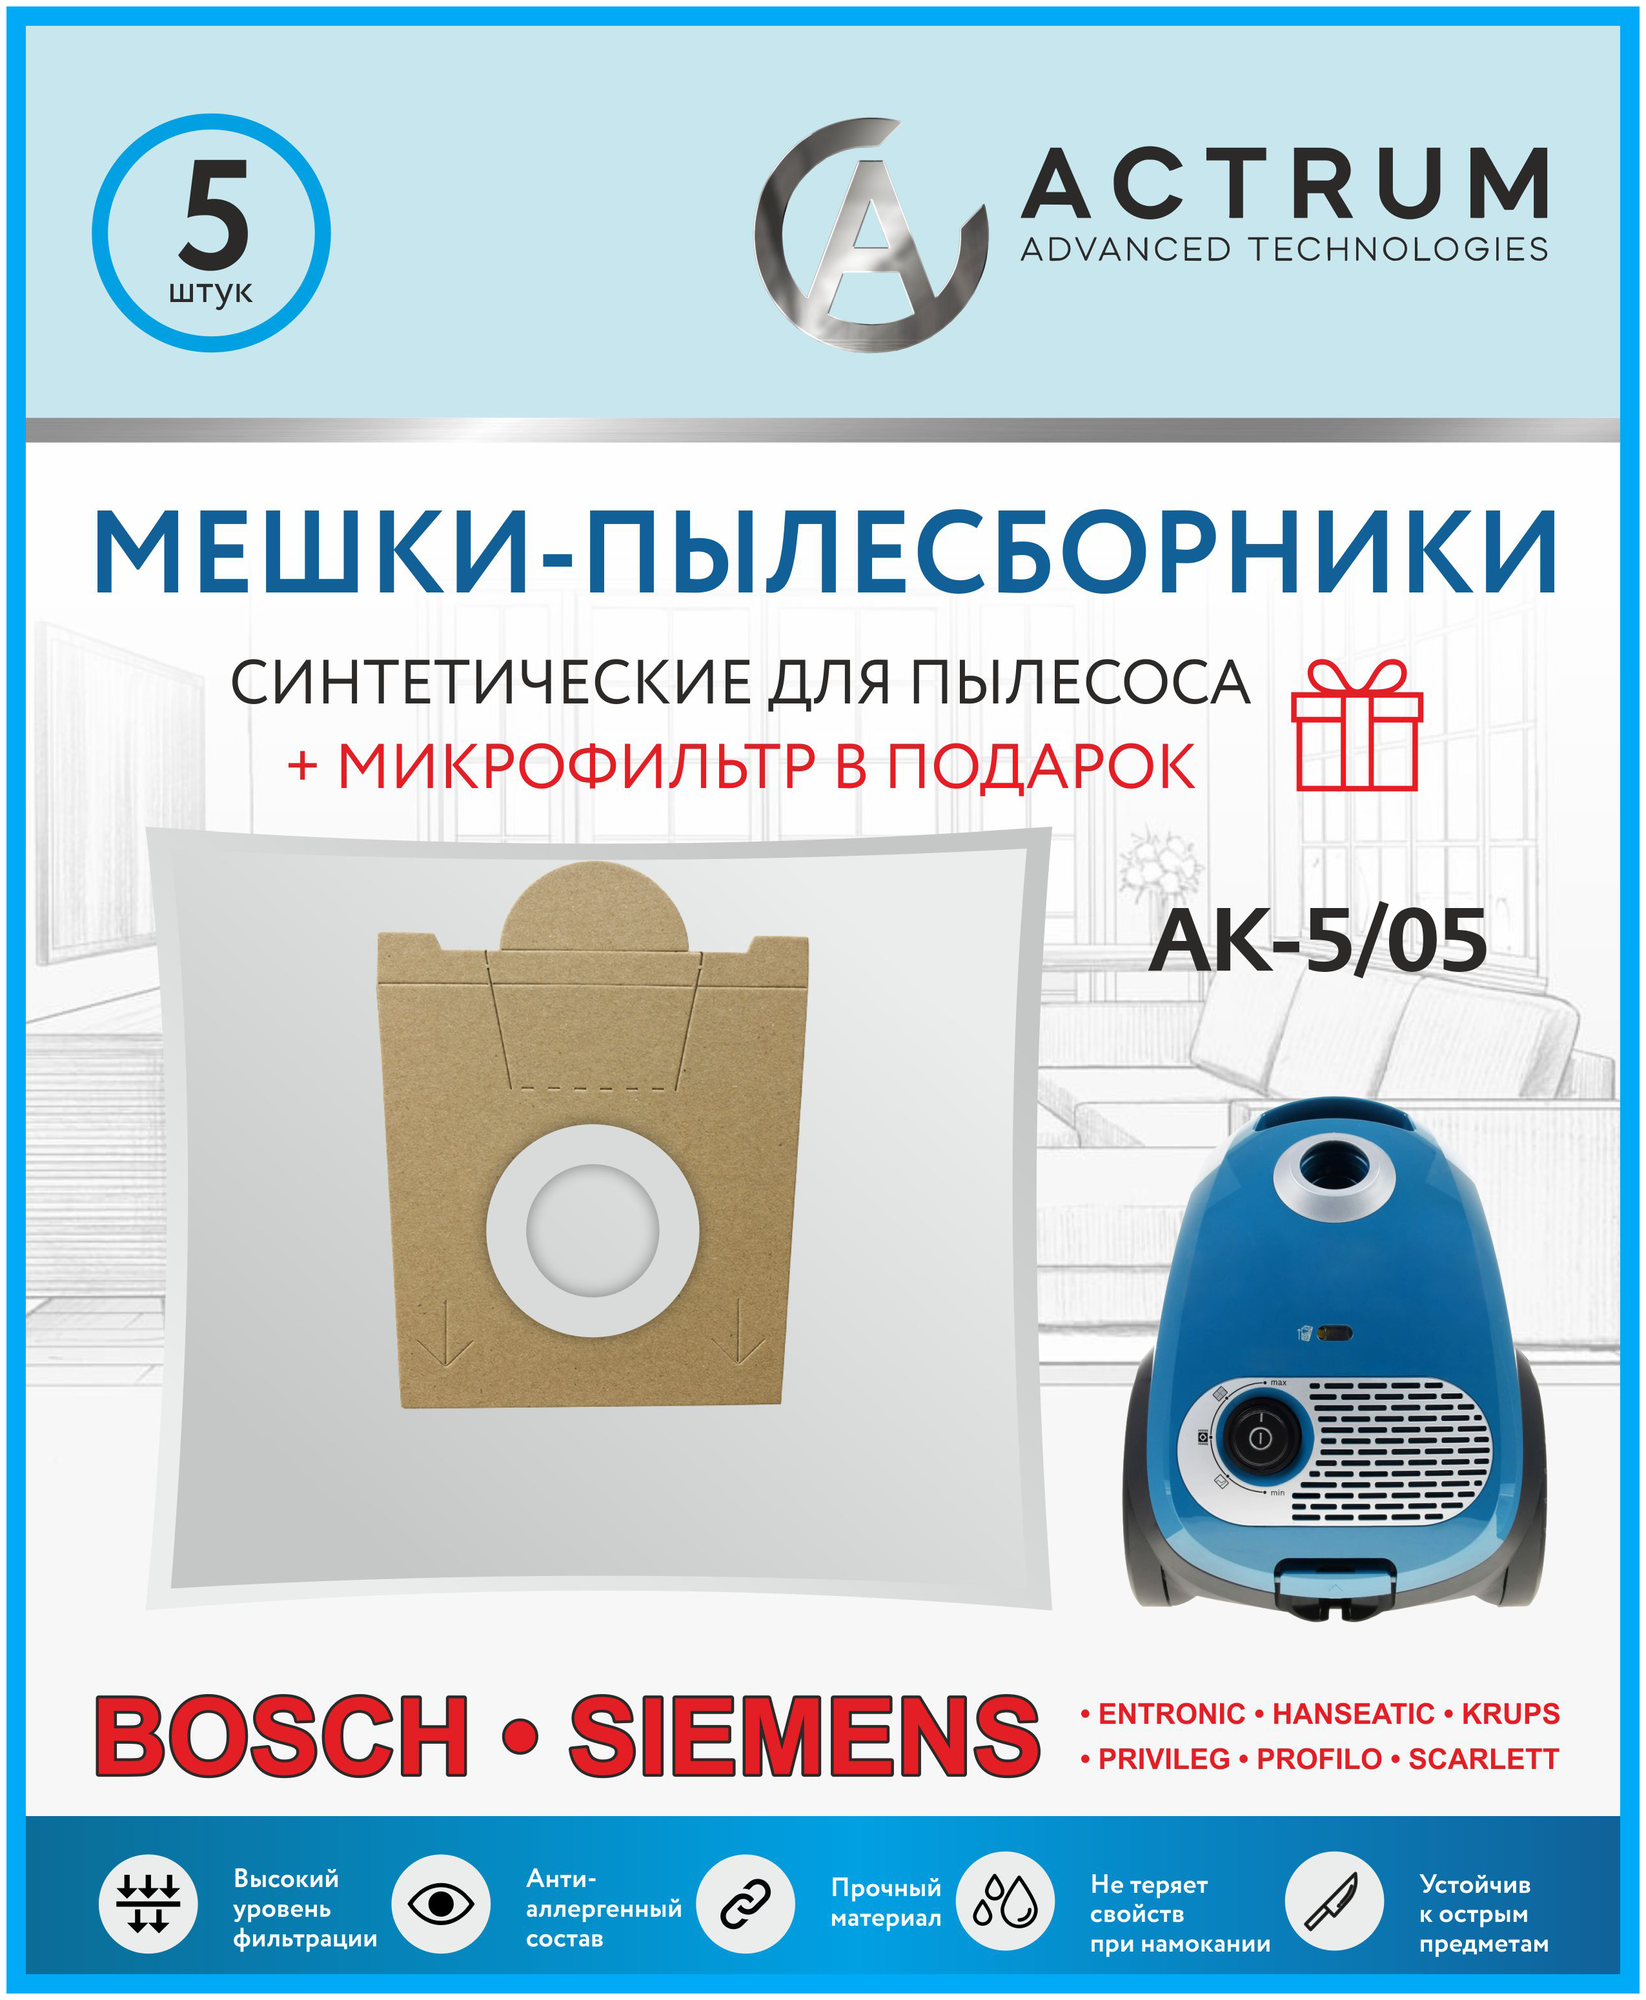 Мешки-пылесборники ACTRUM AK-5/05 для пылесосов BOSCH SIEMENS SCARLETT UFESA KRUPS + микрофильтр